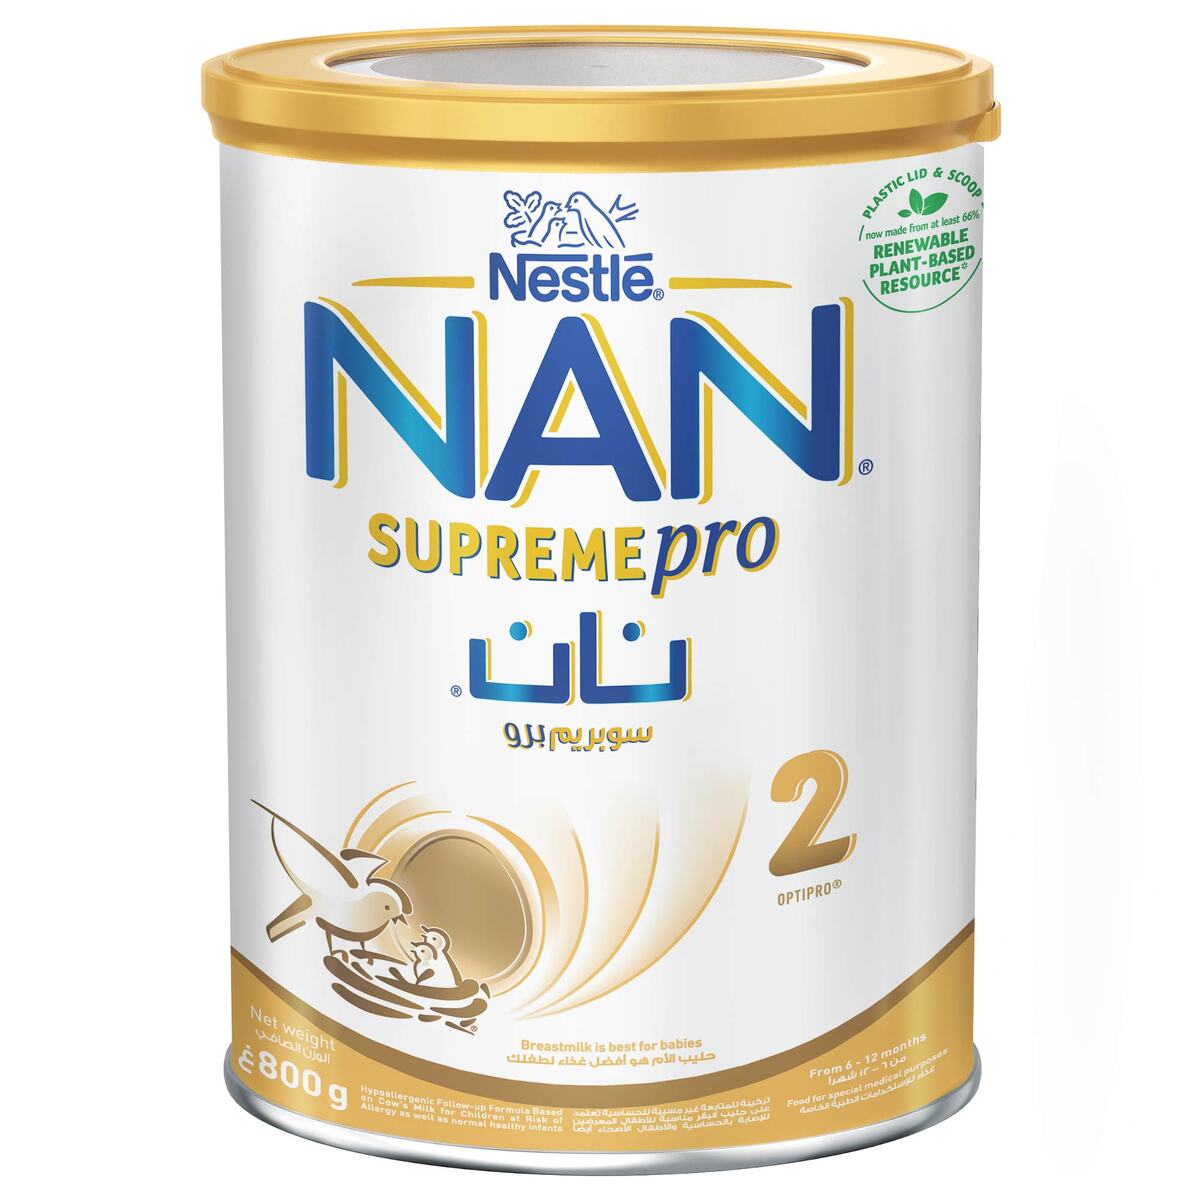 Nestle NAN Supreme Pro 2 Infant Formula From 6-12 Months 800 g